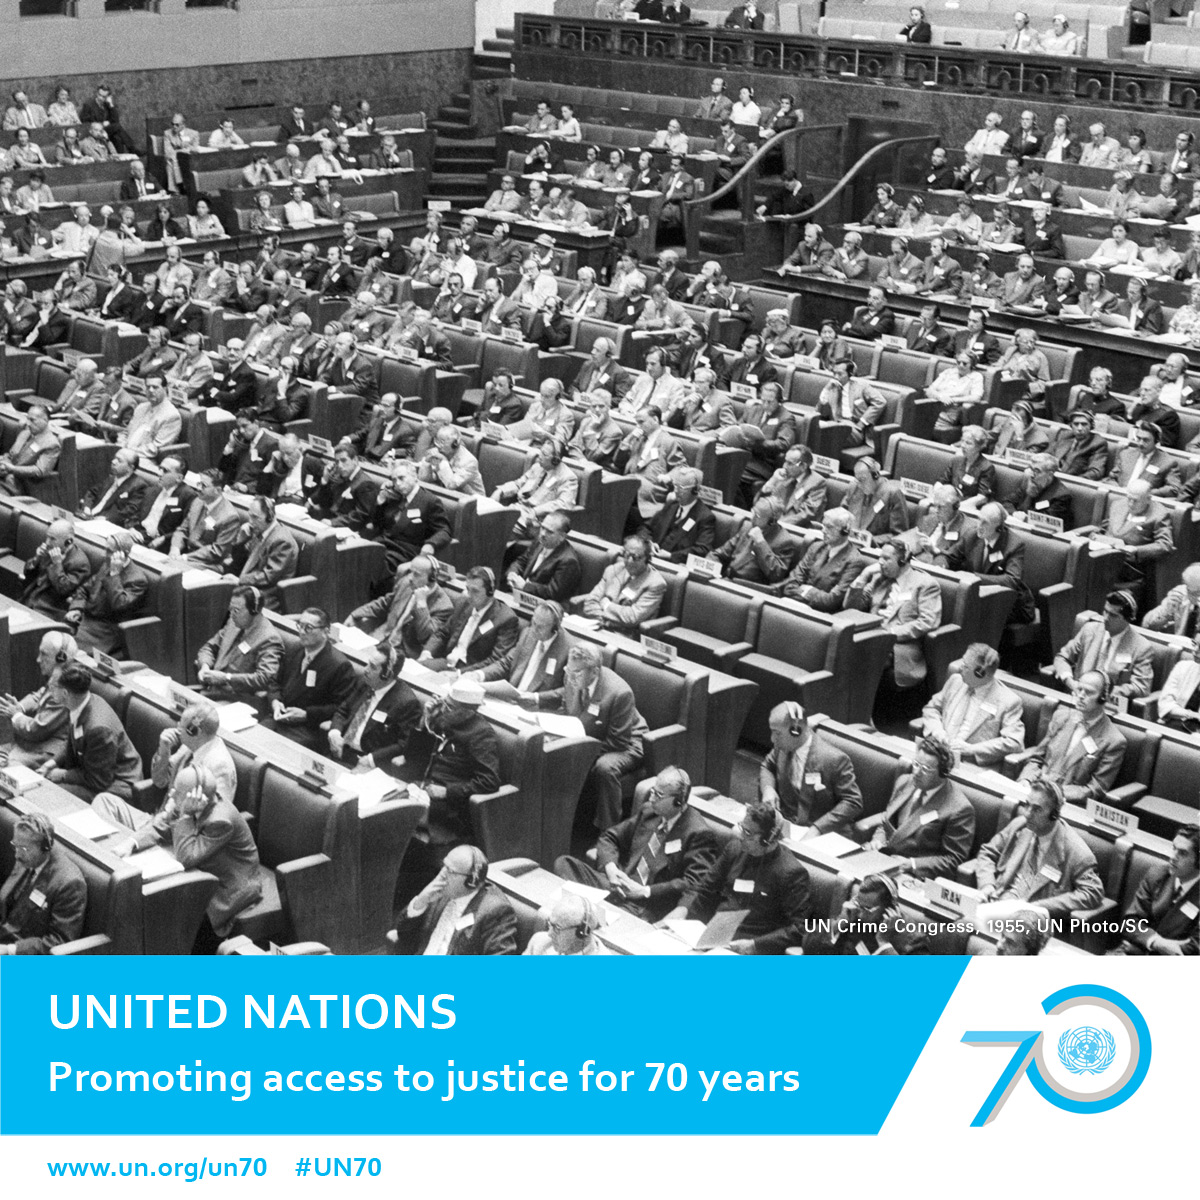 UN Crime Congress, 1955, UN Photo/SC